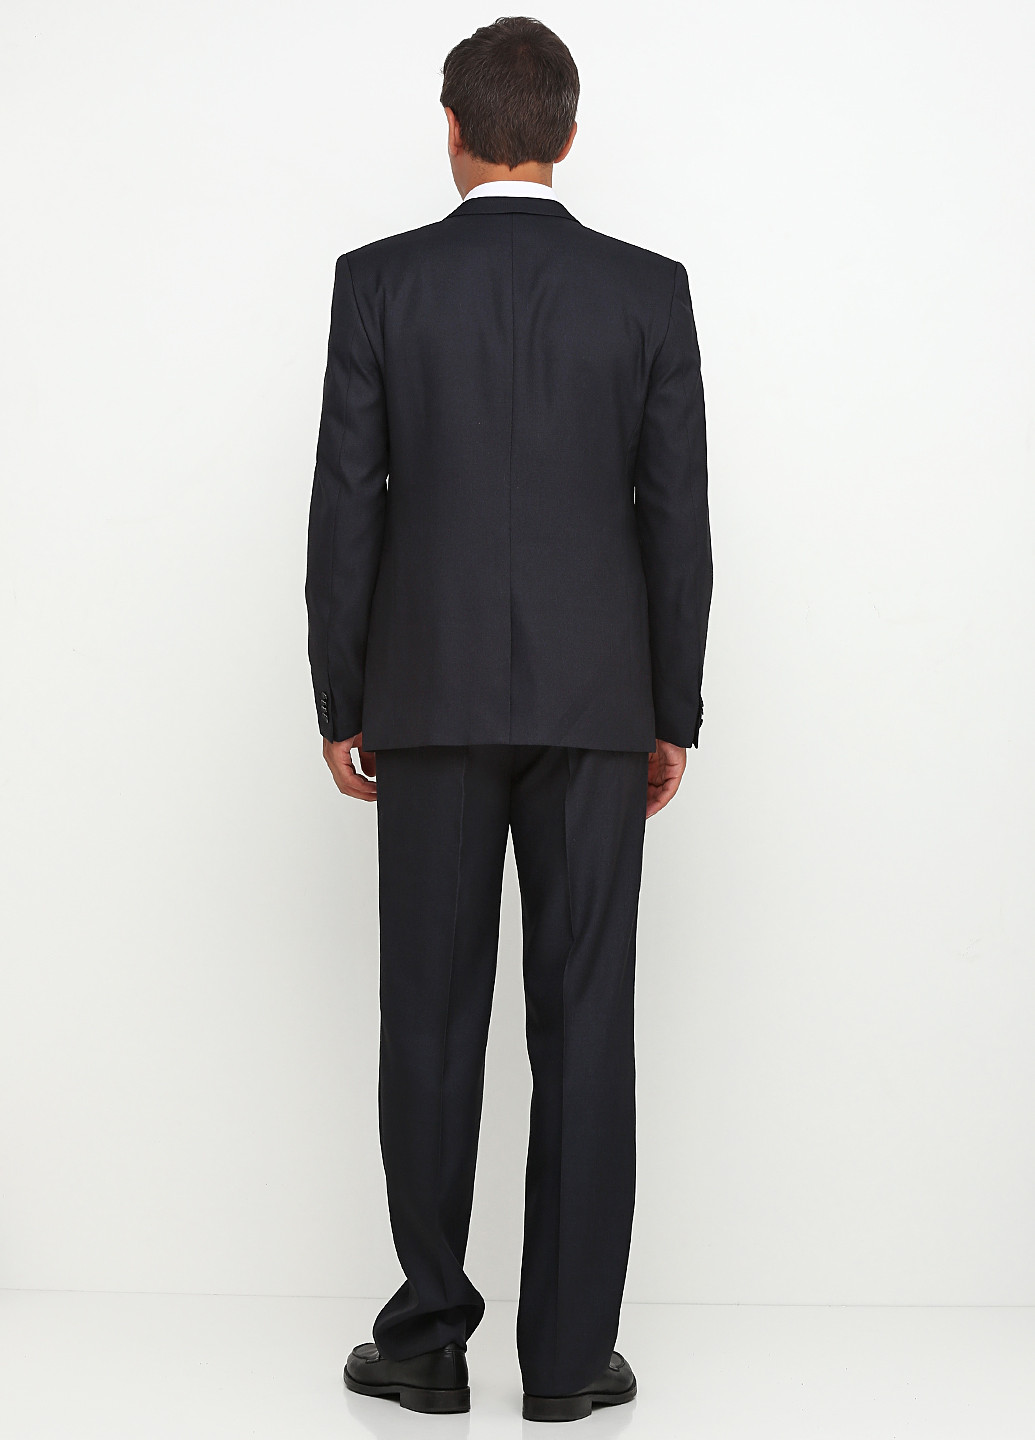 Грифельно-серый демисезонный костюм (пиджак, брюки) брючный Galant